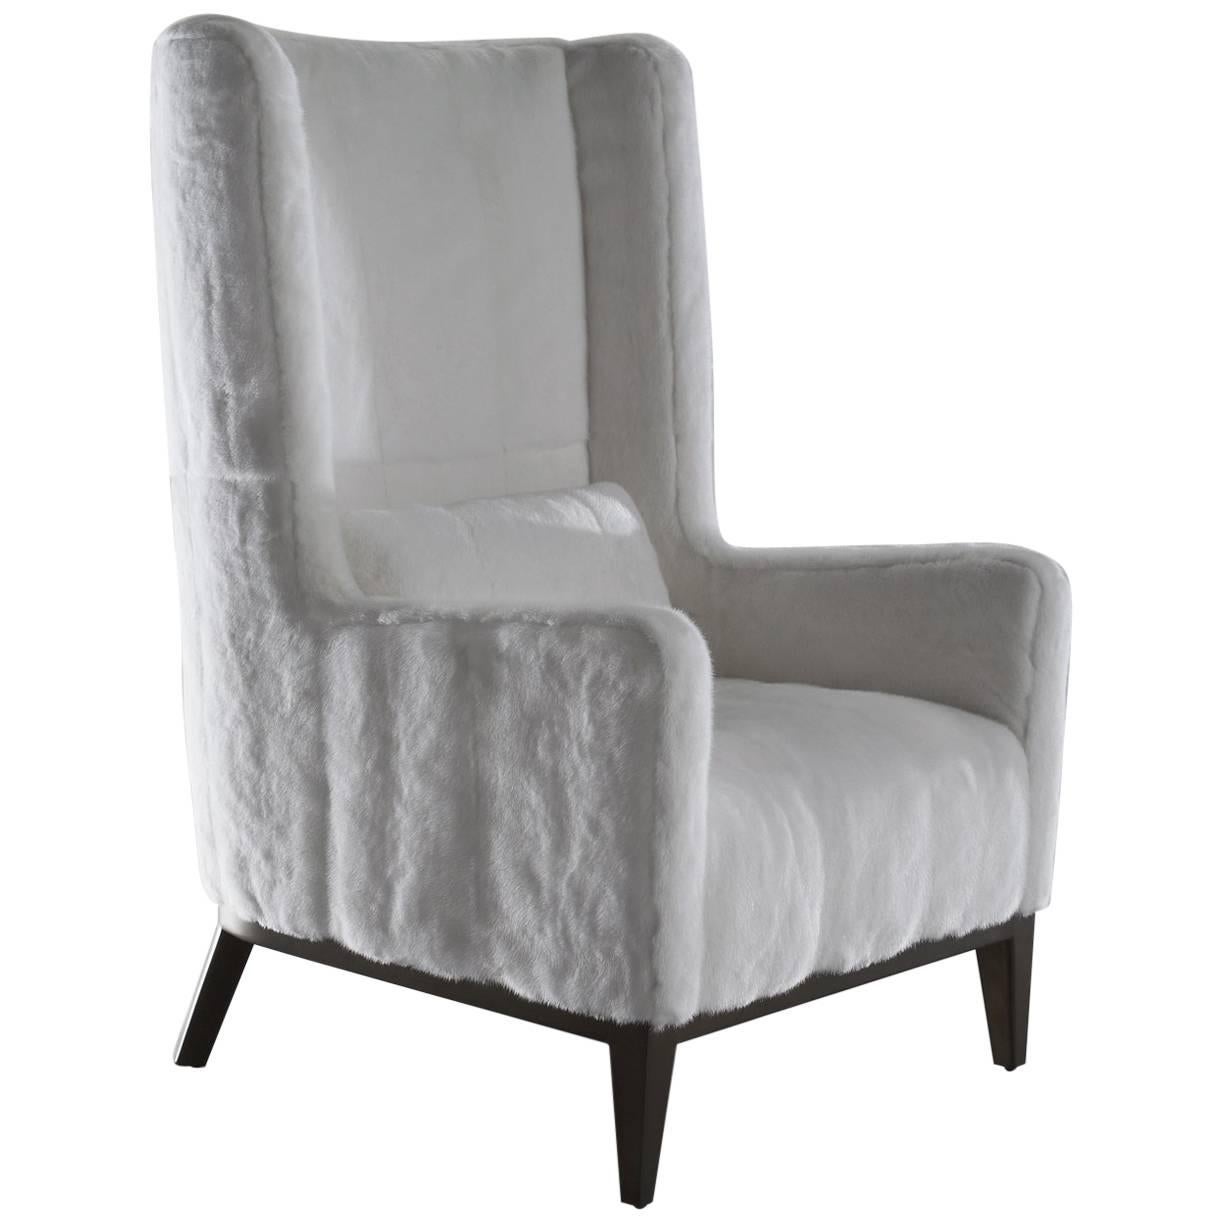 "Saint-Moritz" Armchair White Mink Upholstery For Sale